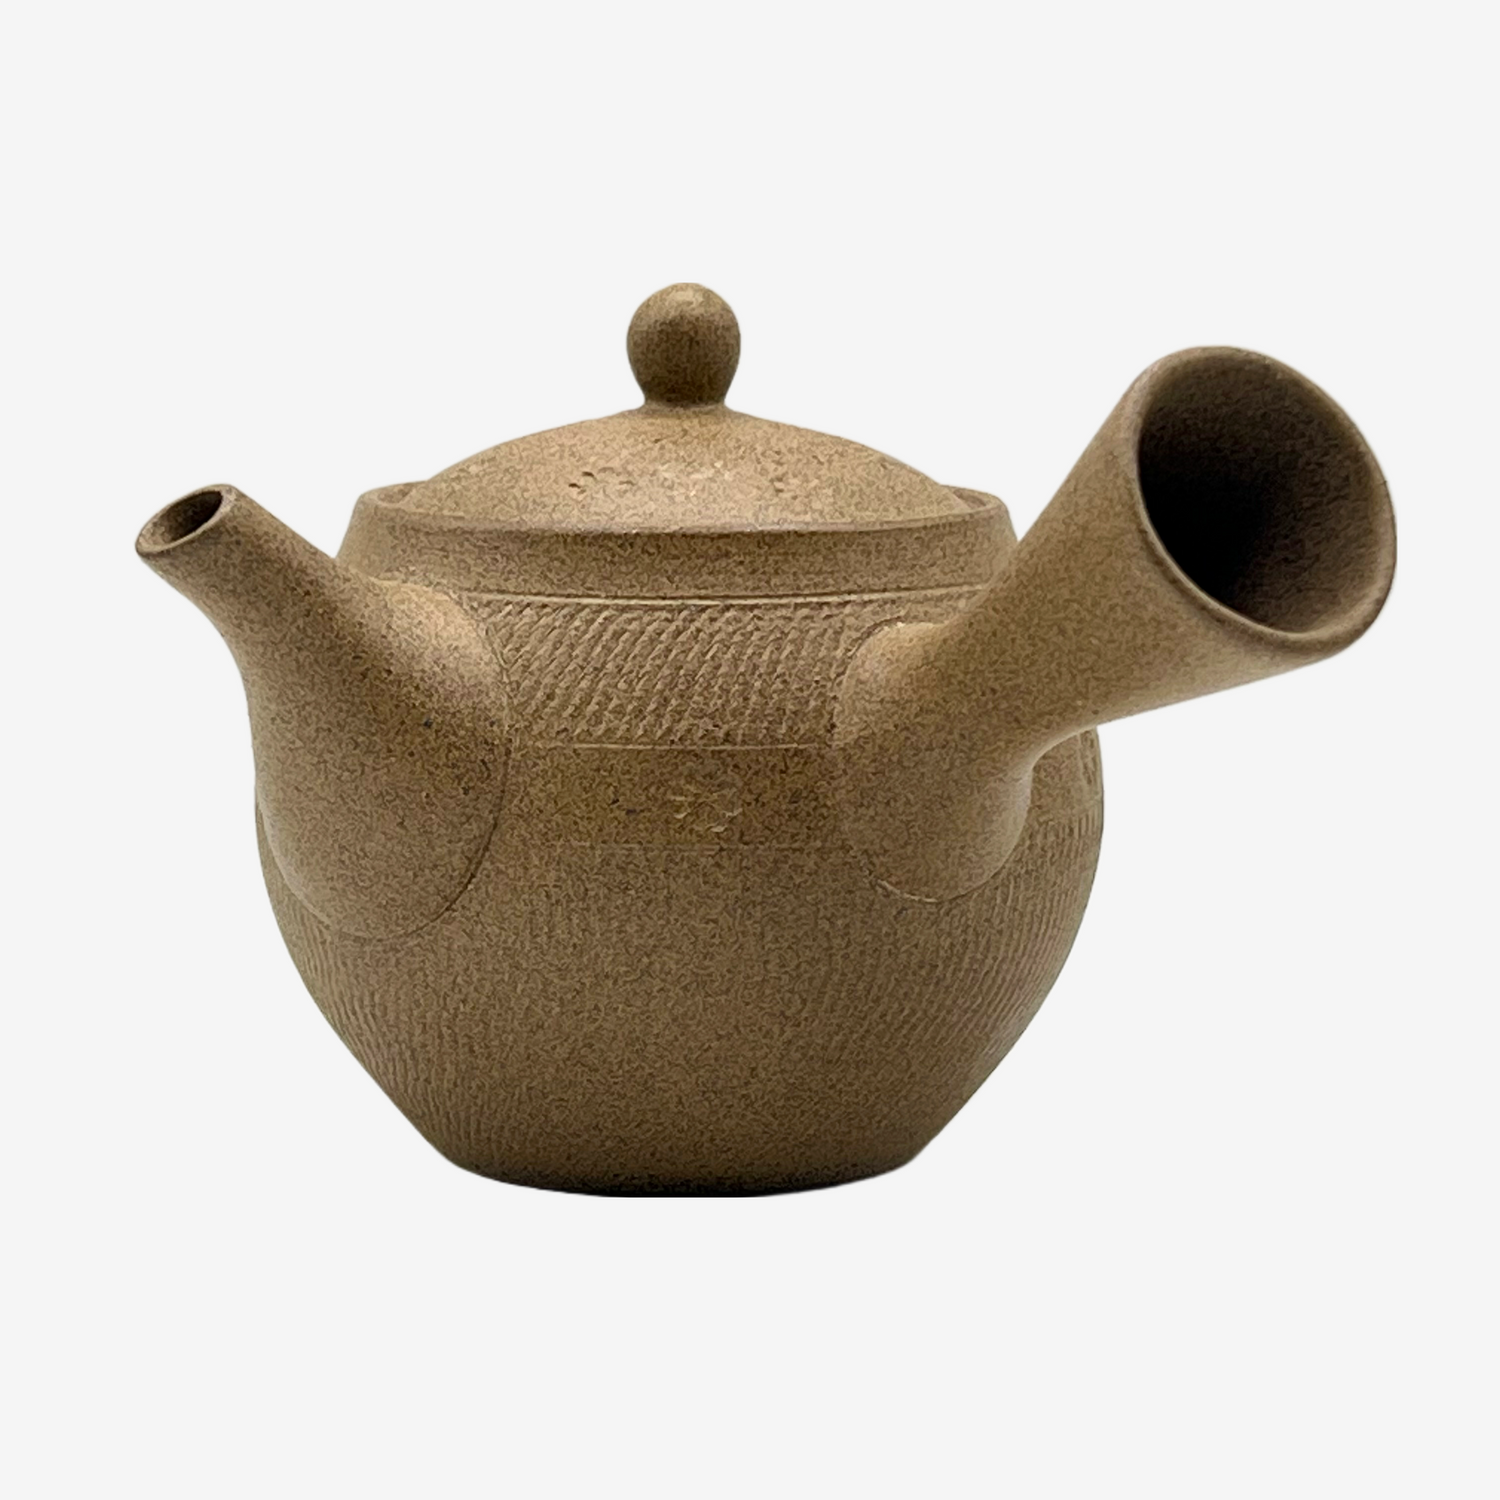 Shirushi Hana Fusensaku Tokoname Kyusu - Japanese Teapot